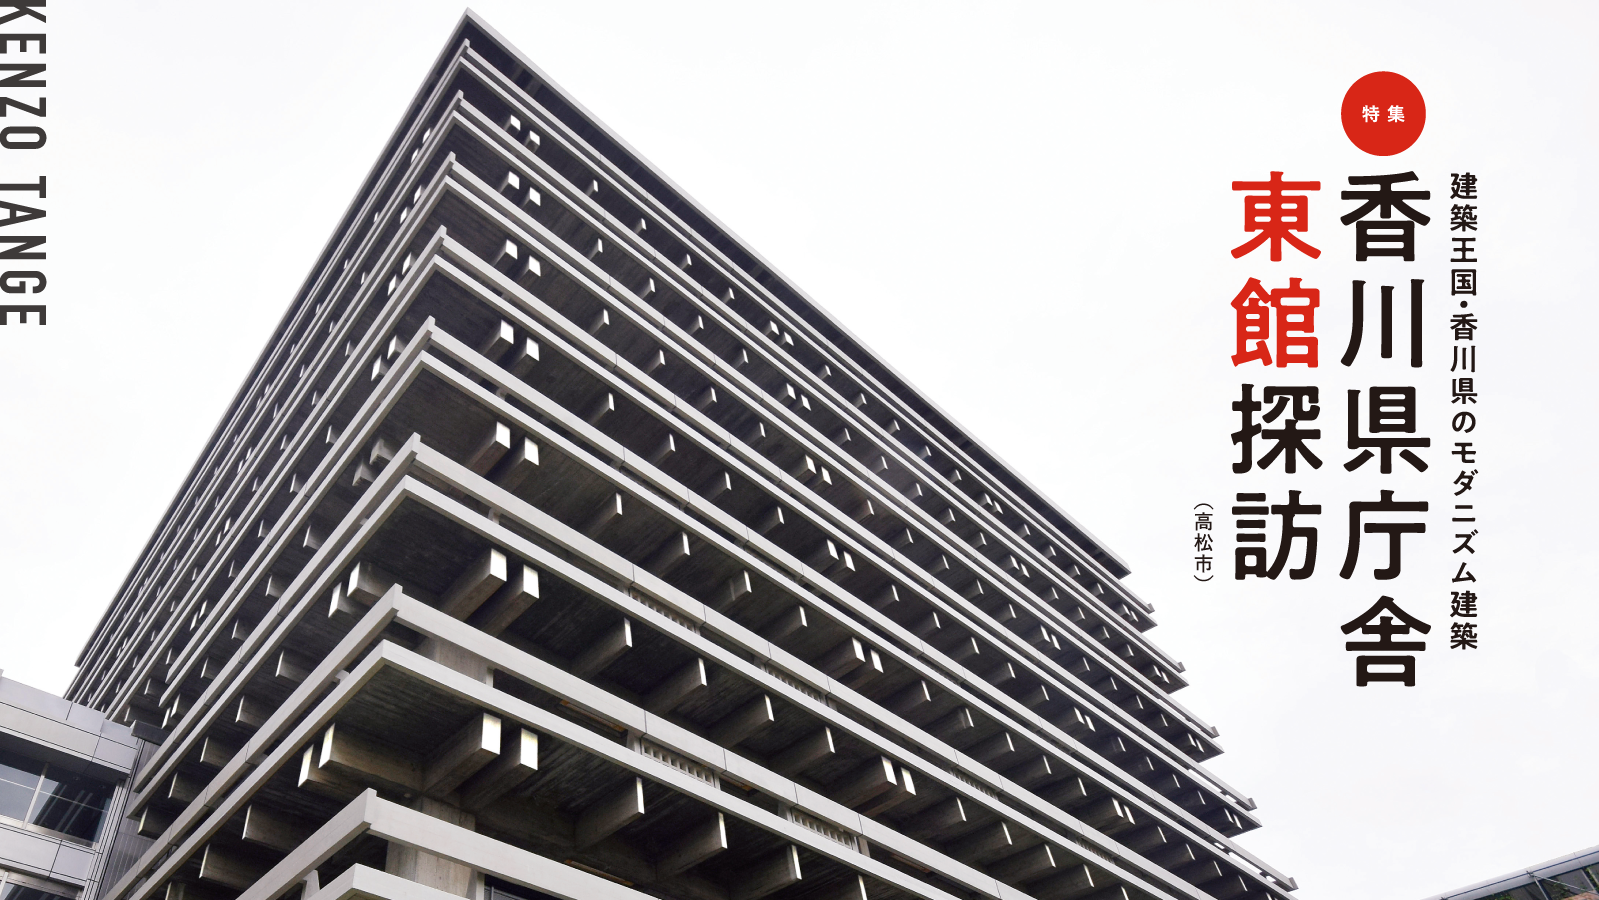 建築王国・香川県のモダニズム建築香川県庁舎東館探訪